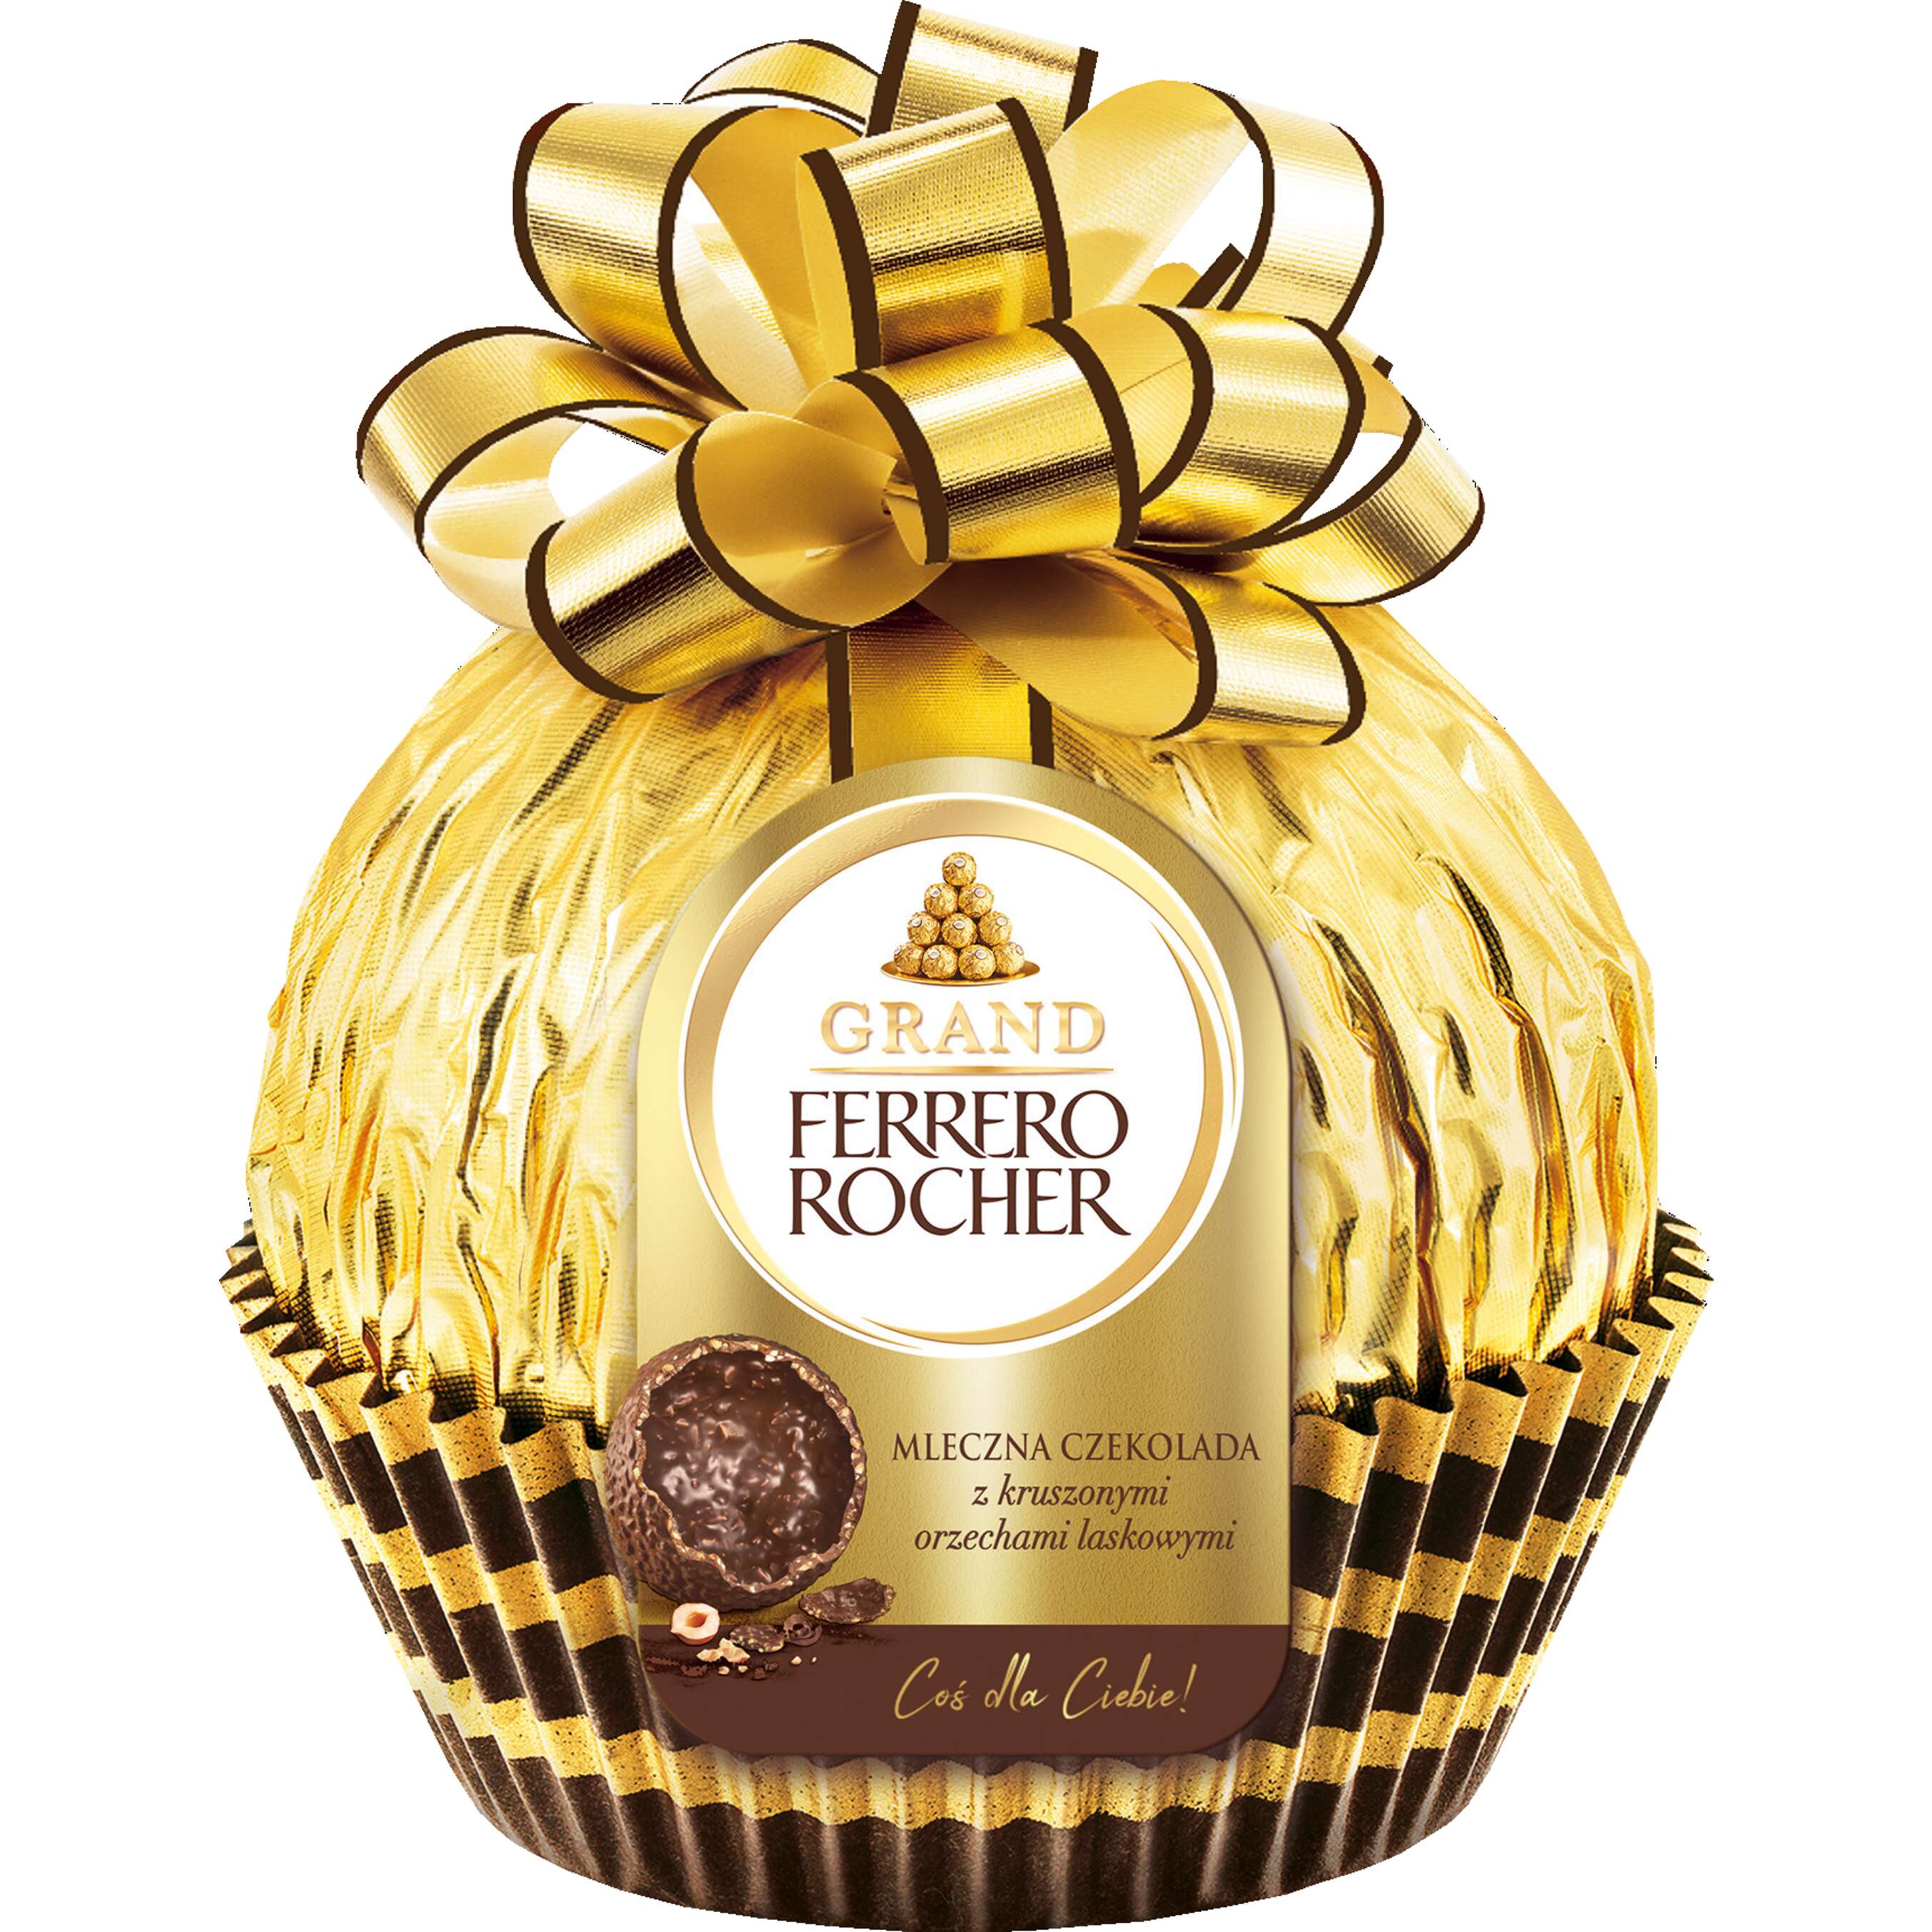 Zdjęcie oferty Ferrero Rocher Grand Figurka czekoladowa